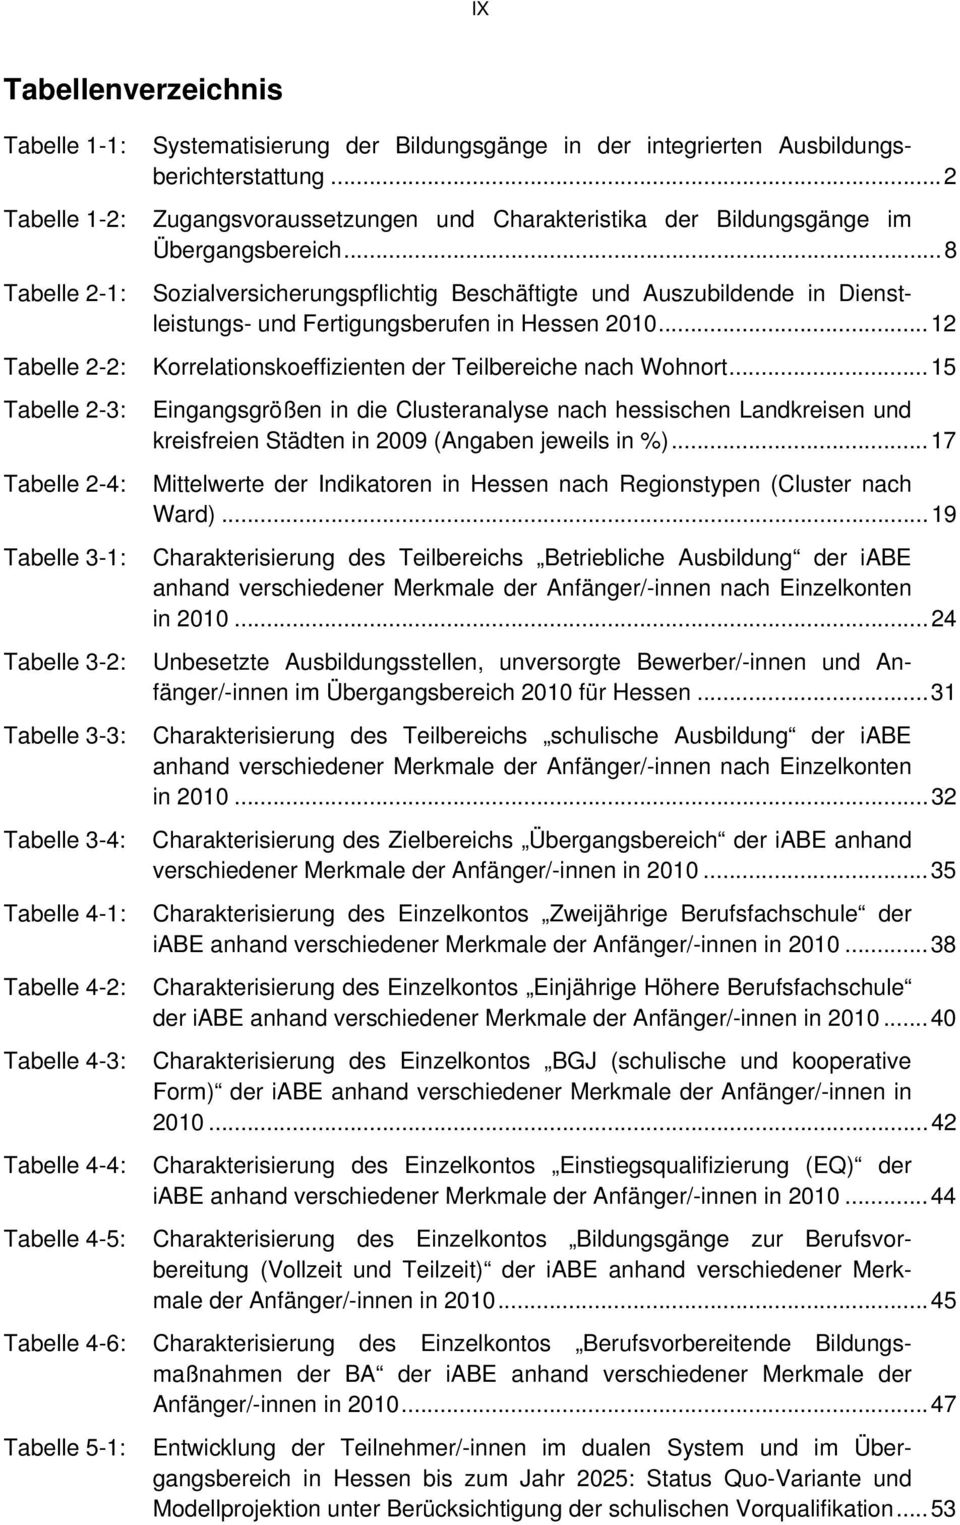 .. 8 Tabelle 2-1: Sozialversicherungspflichtig Beschäftigte und Auszubildende in Dienstleistungs- und Fertigungsberufen in Hessen 2010.